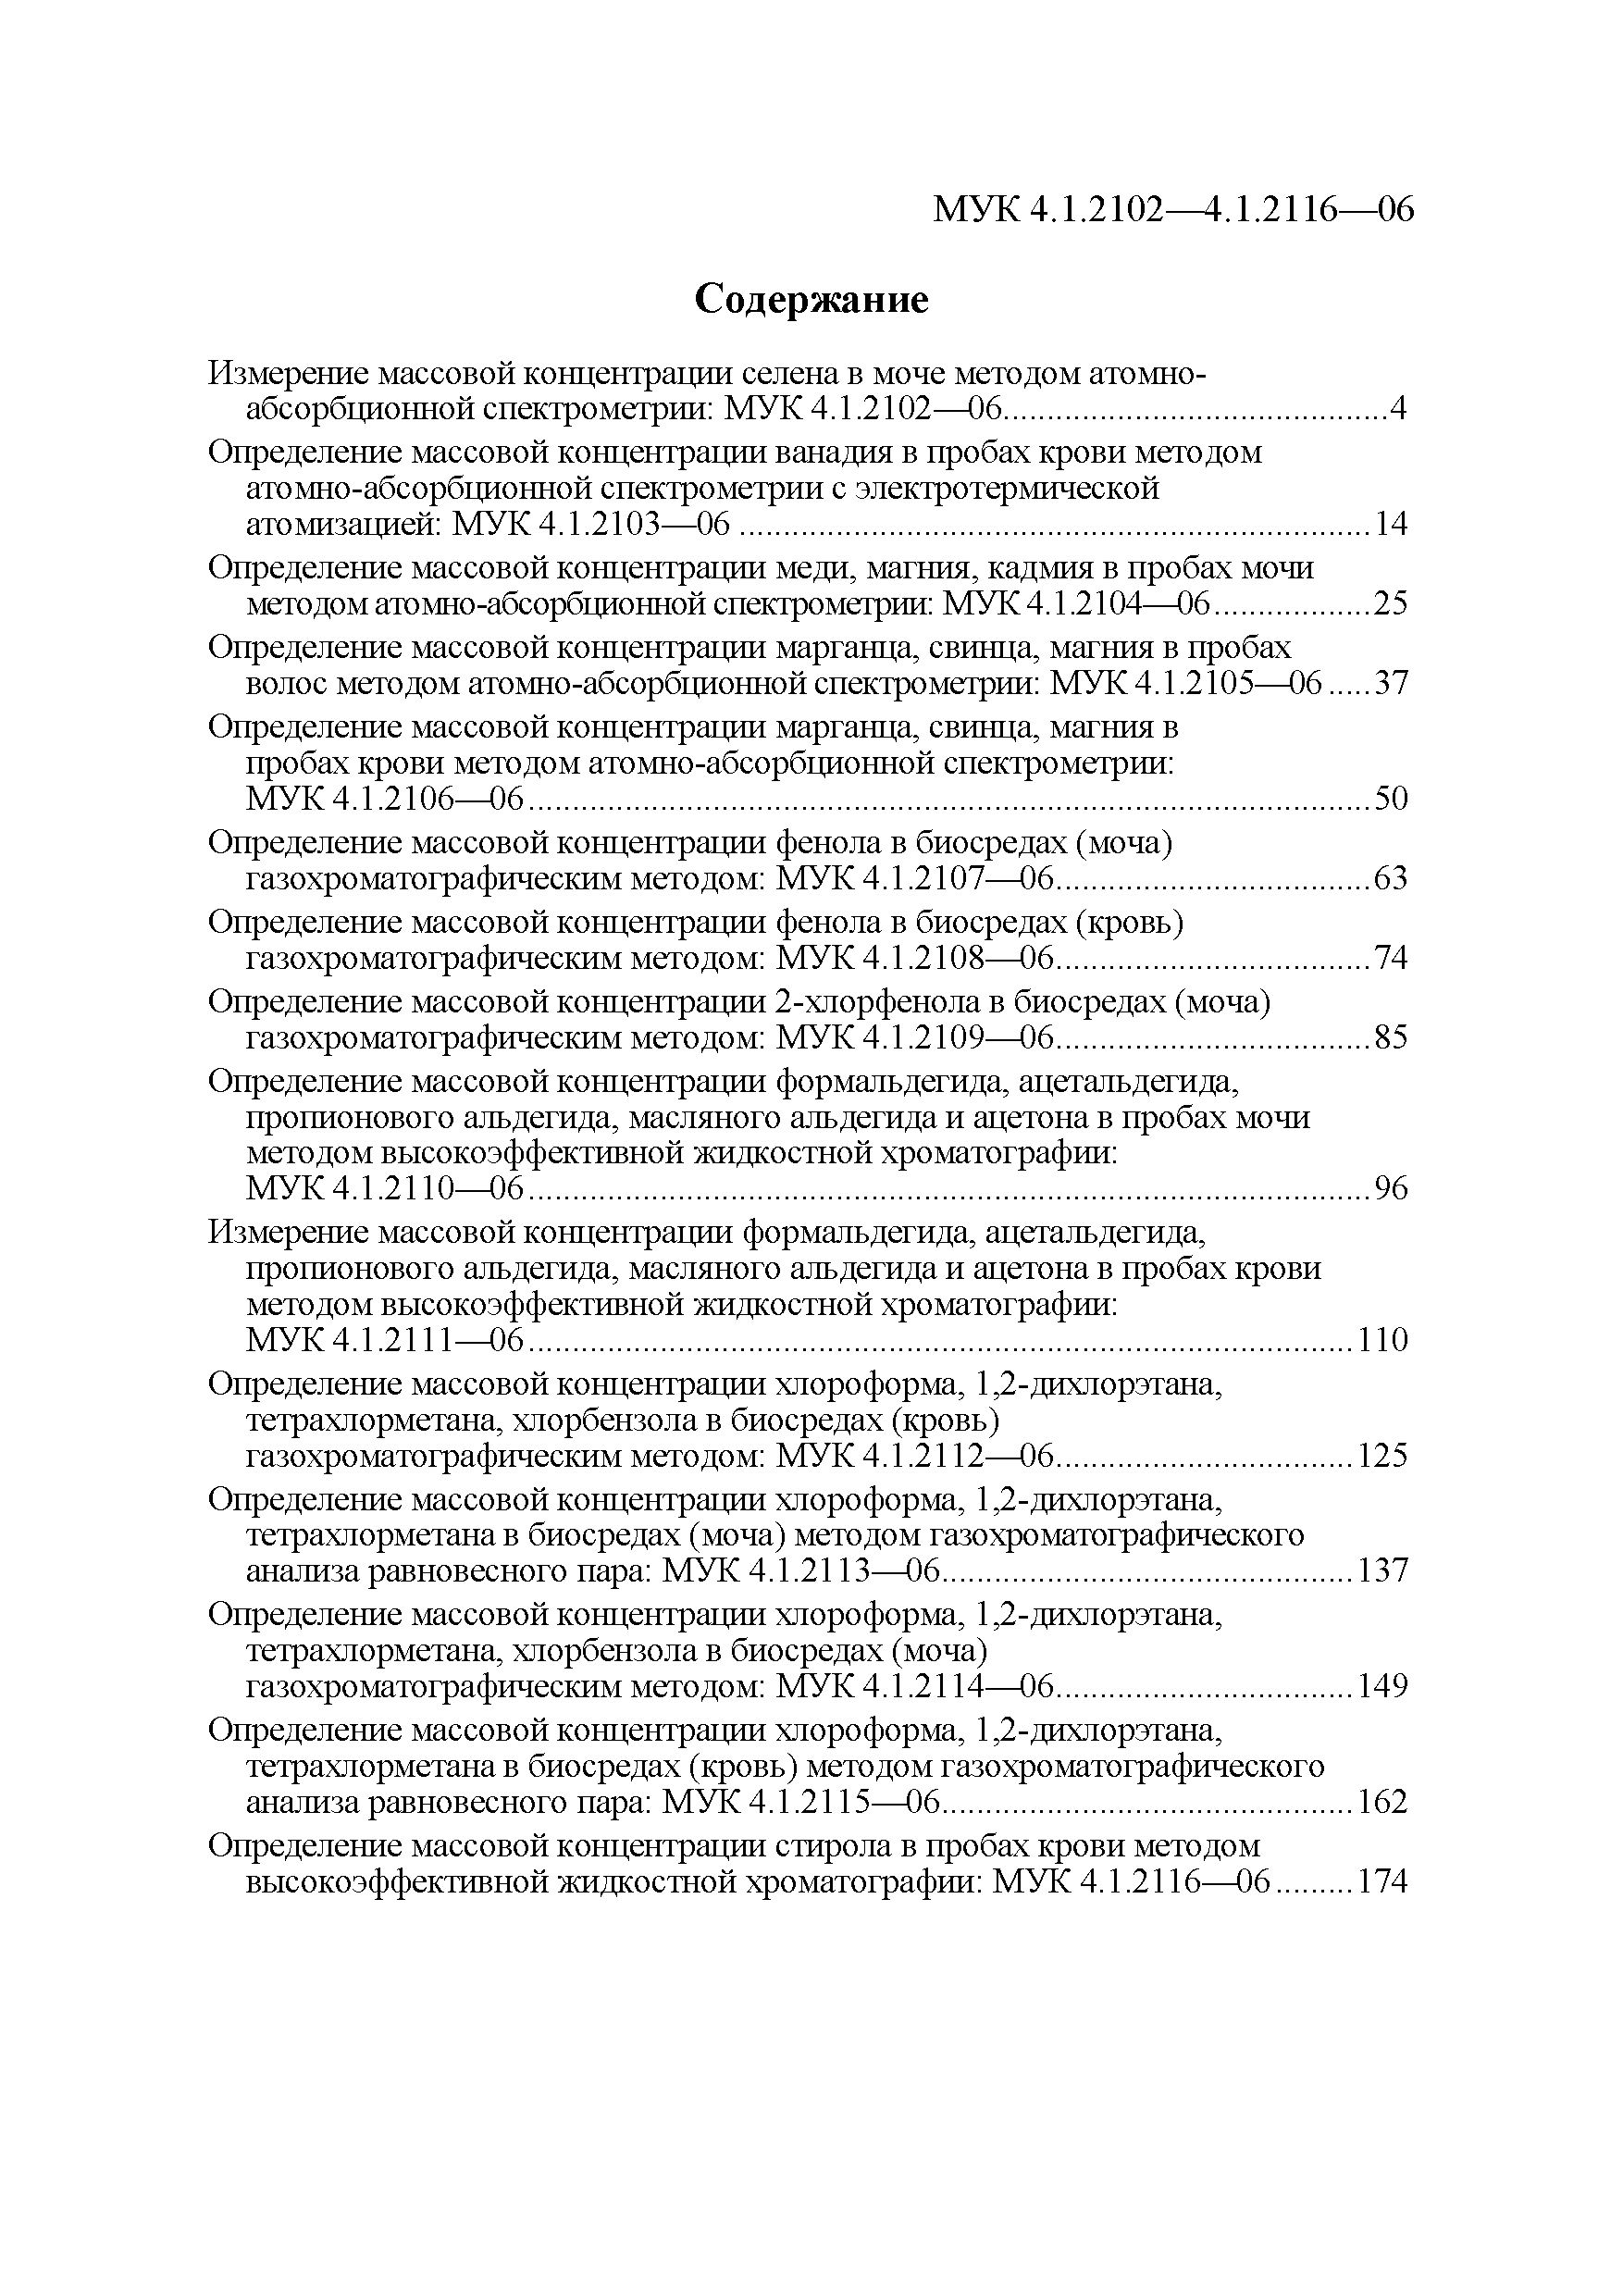 МУК 4.1.2116-06